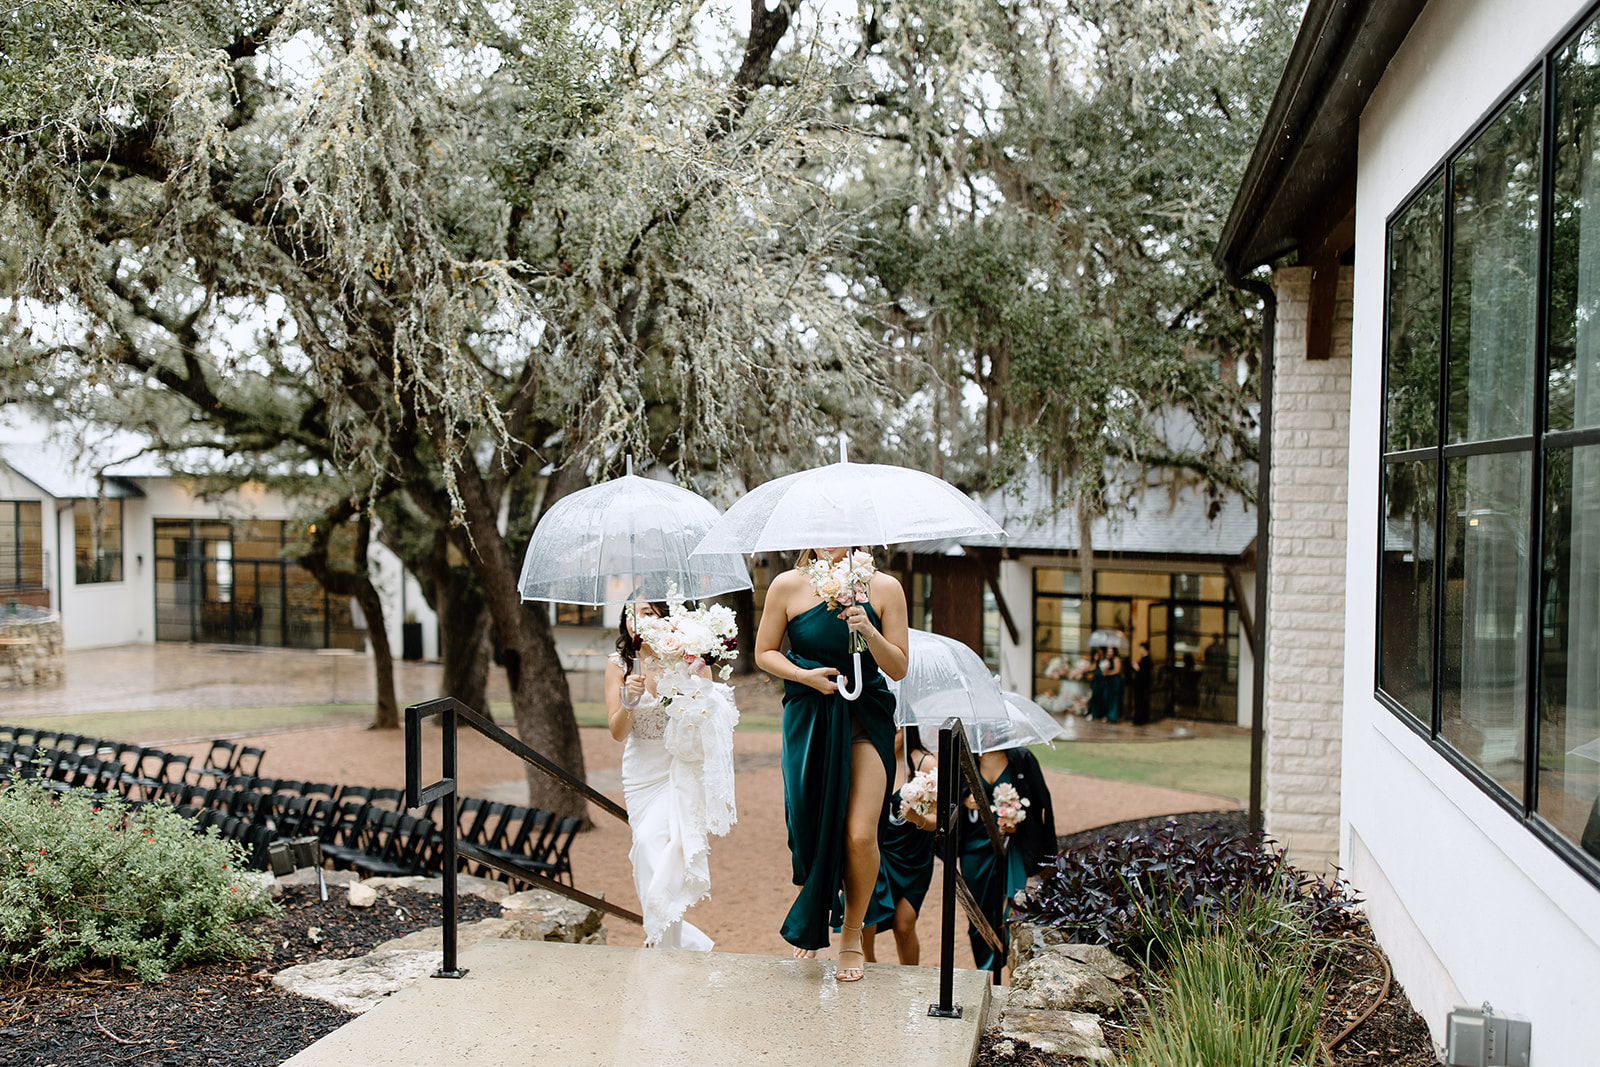 Bride and bridesmaids with umbrellas